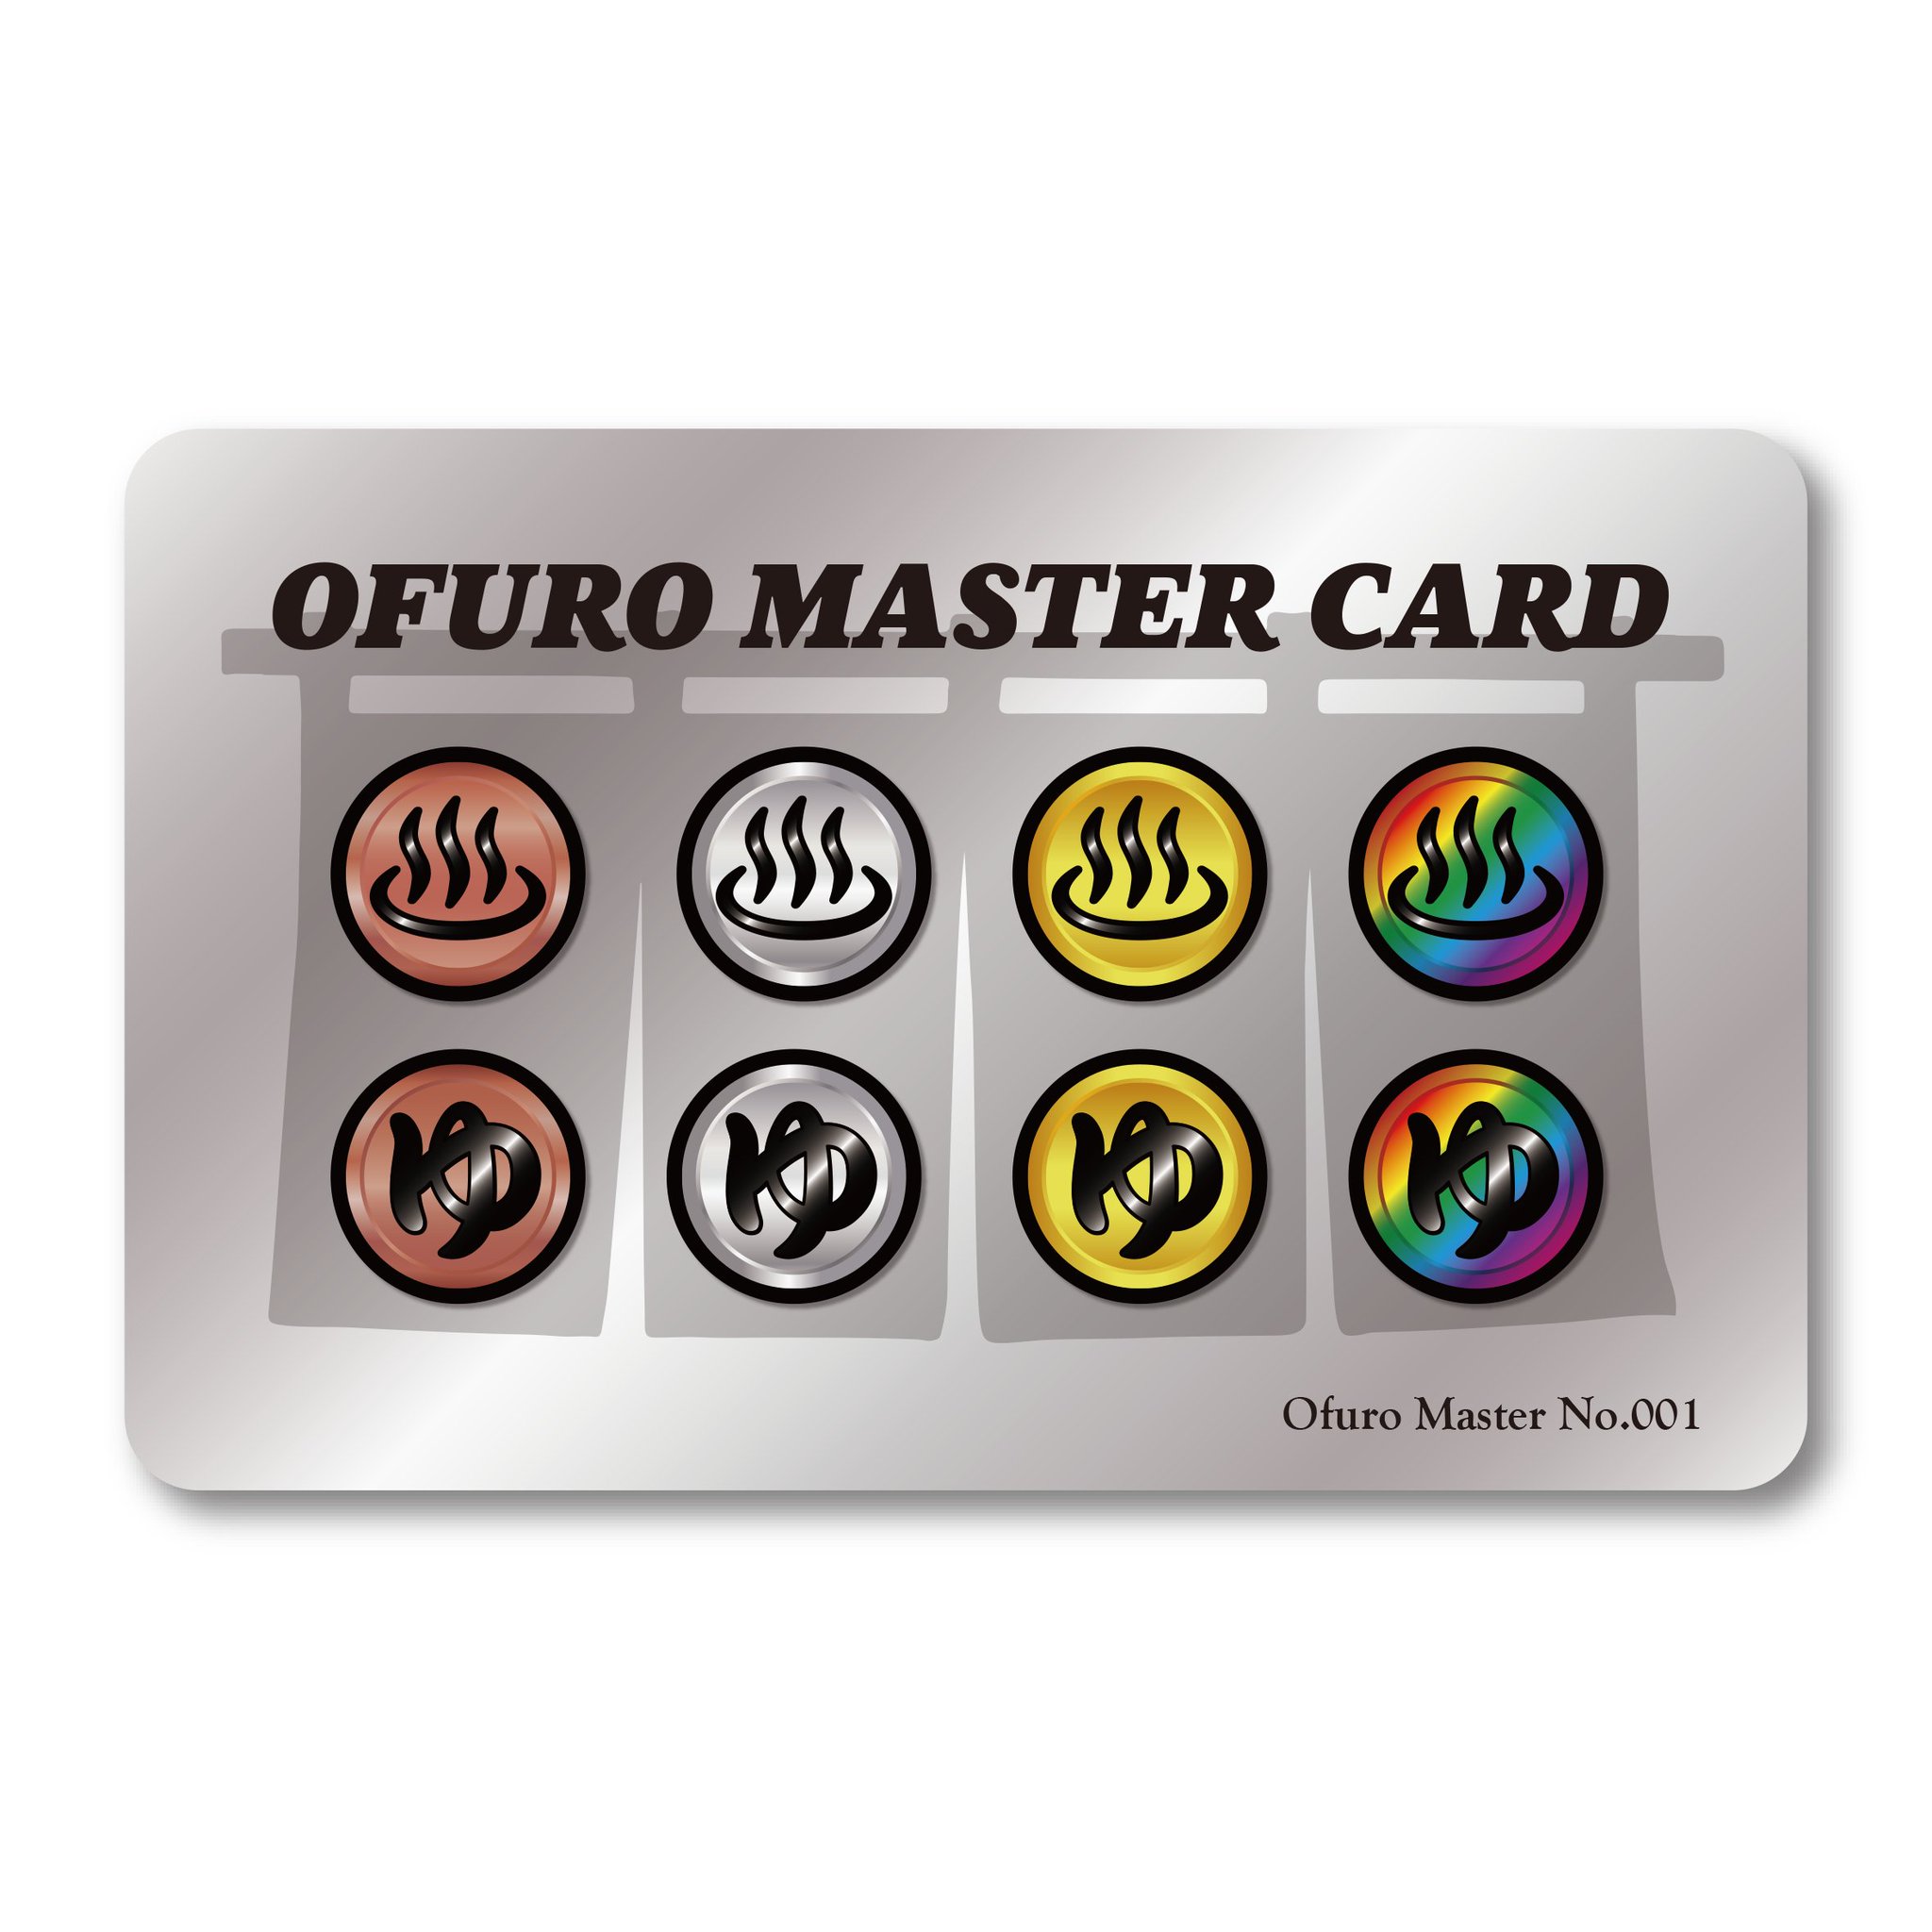 PLATINUM - OFURO MASTER CARD 001